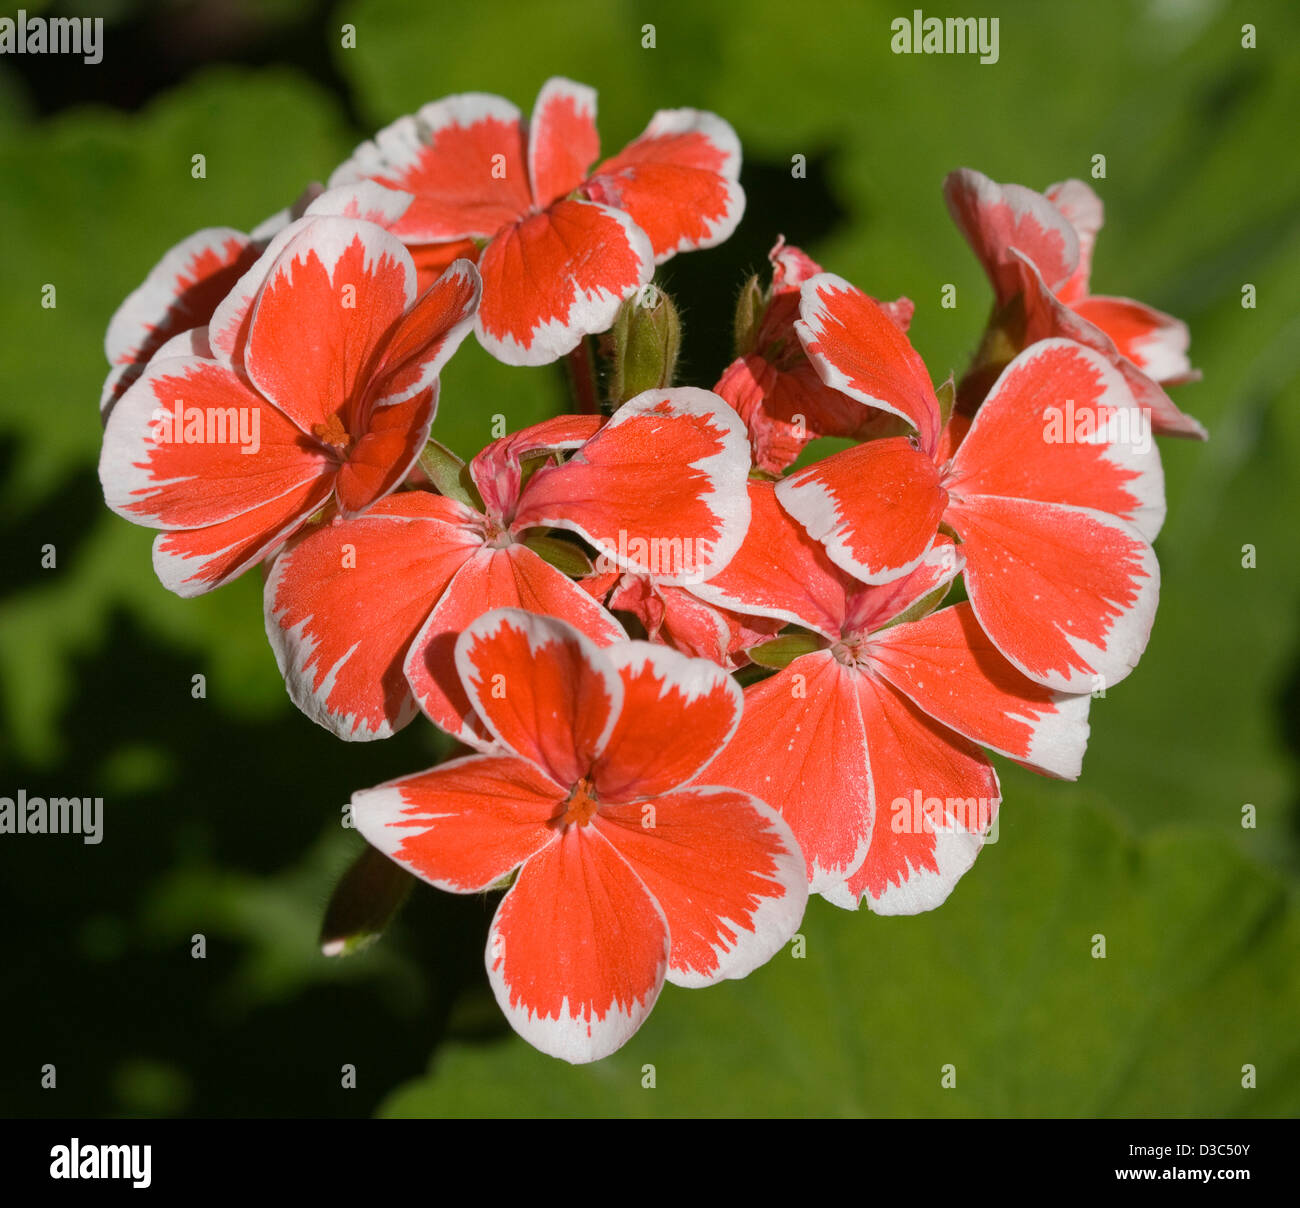 Grappe de couleur orange / rouge et blanc fleurs de géranium cultivar 'Mr. Wren' contre un fond vert clair Banque D'Images